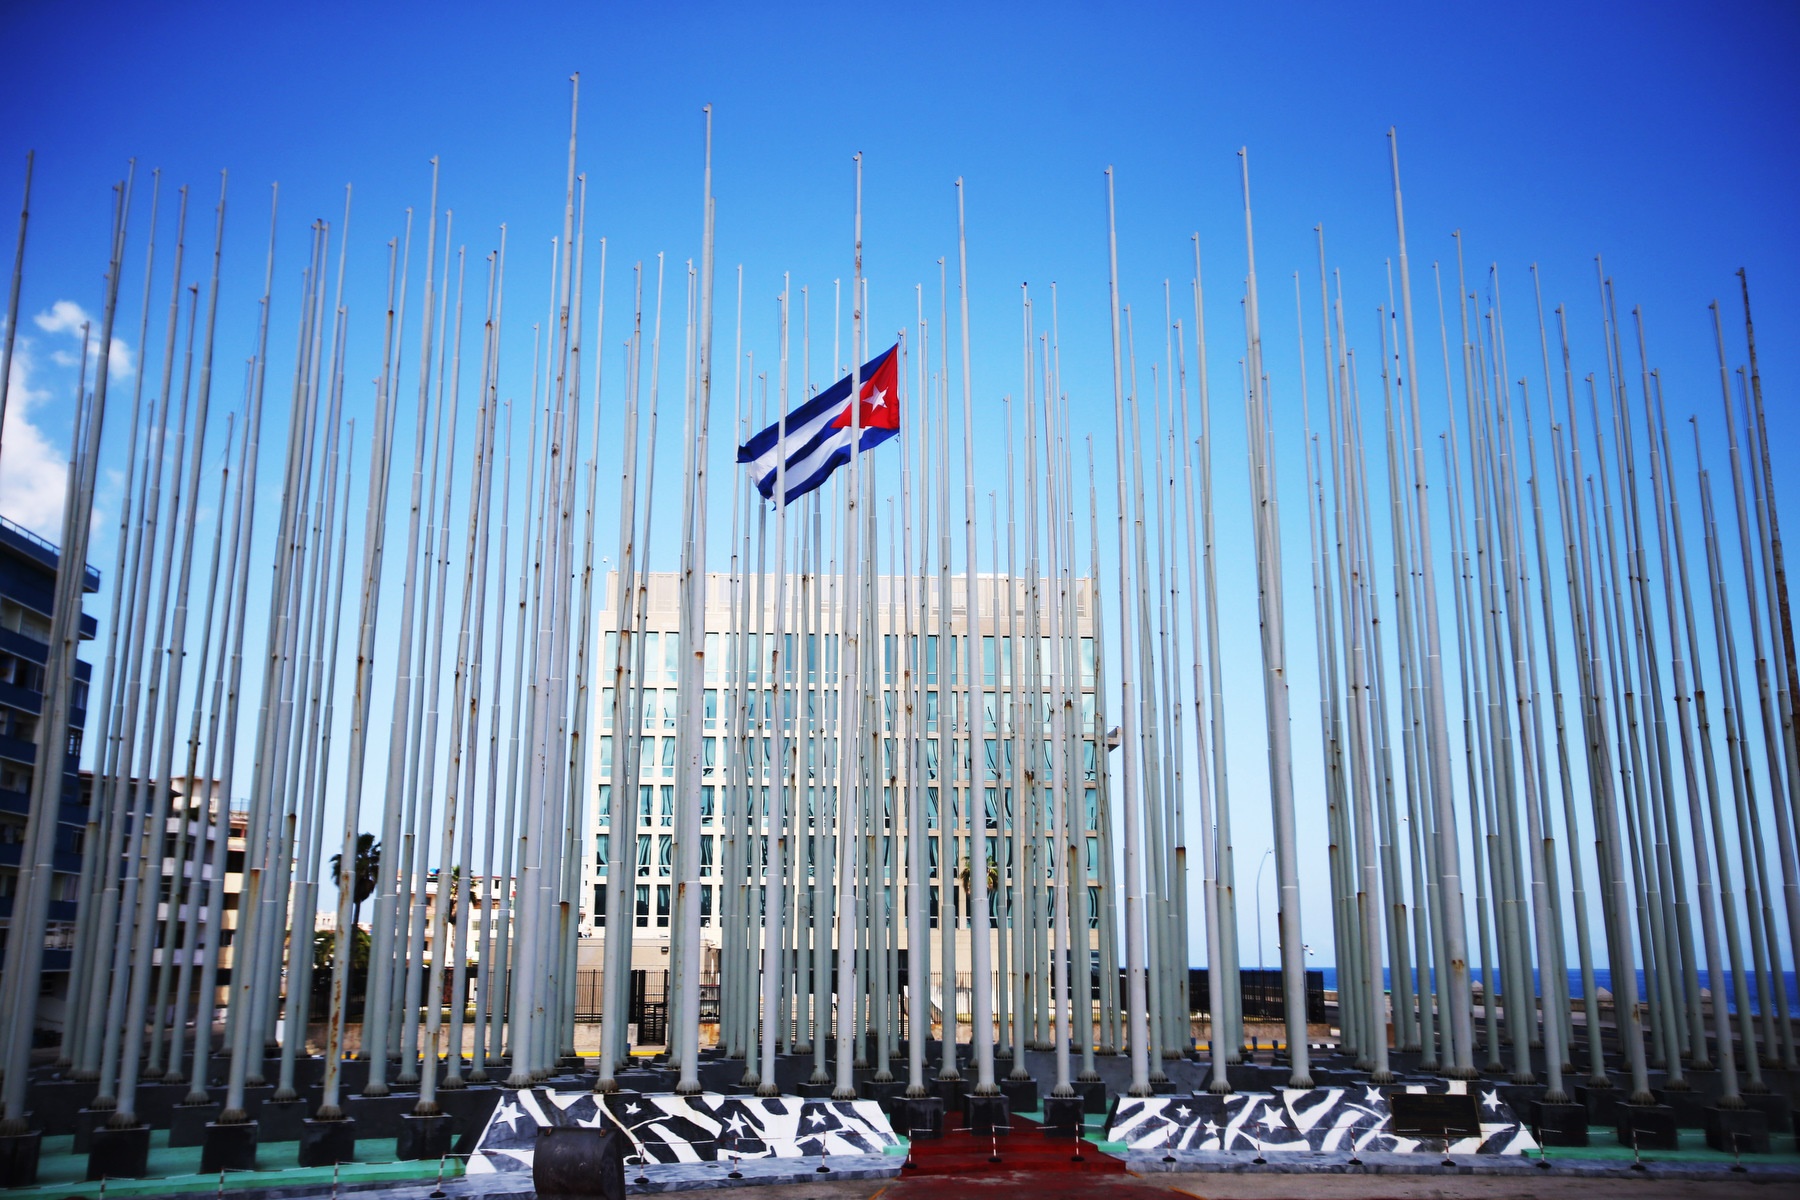 Tribuna antiimperialista, plaza frente a la sesión de intereses de EEUU en Cuba (Foto: EP)